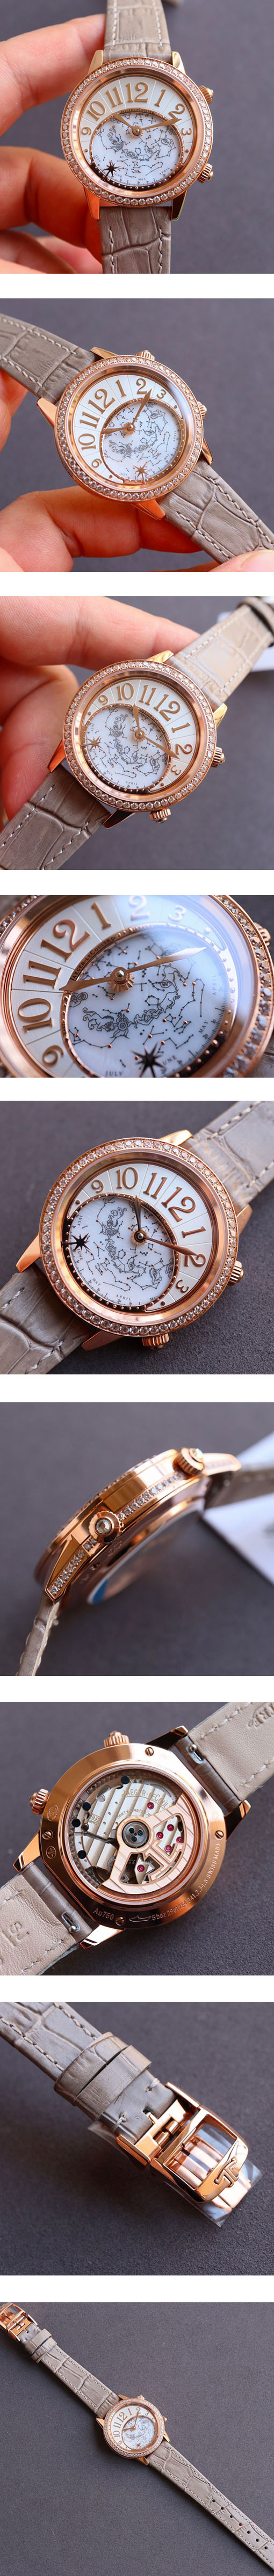 高品質ジャガー・ルクルトスーパーコピー時計 ランデヴー・セレスティアル Q3482520